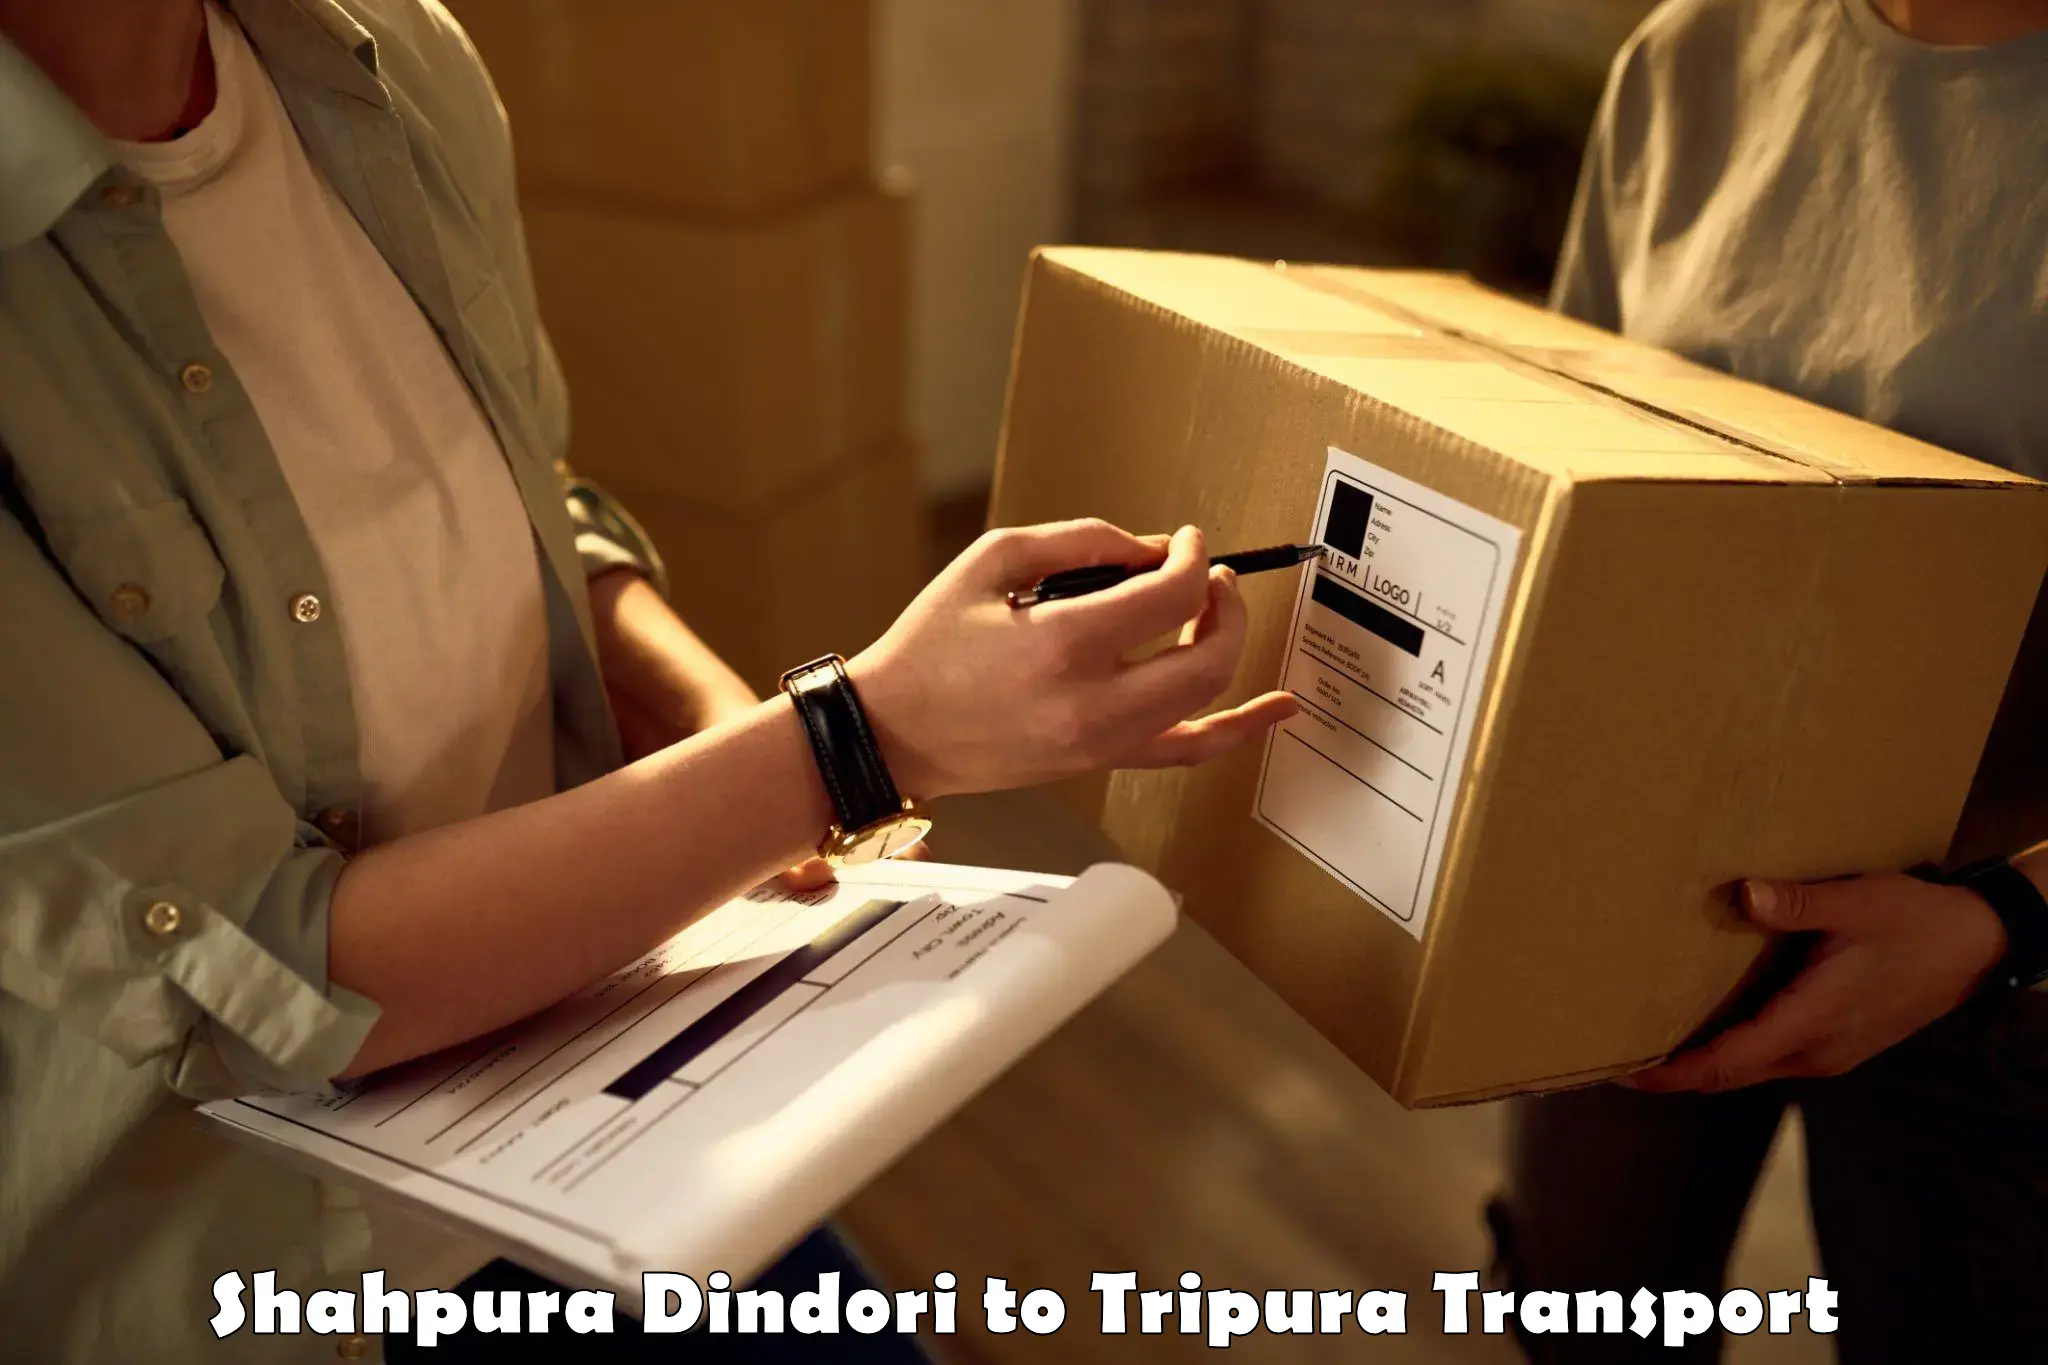 Container transport service Shahpura Dindori to West Tripura